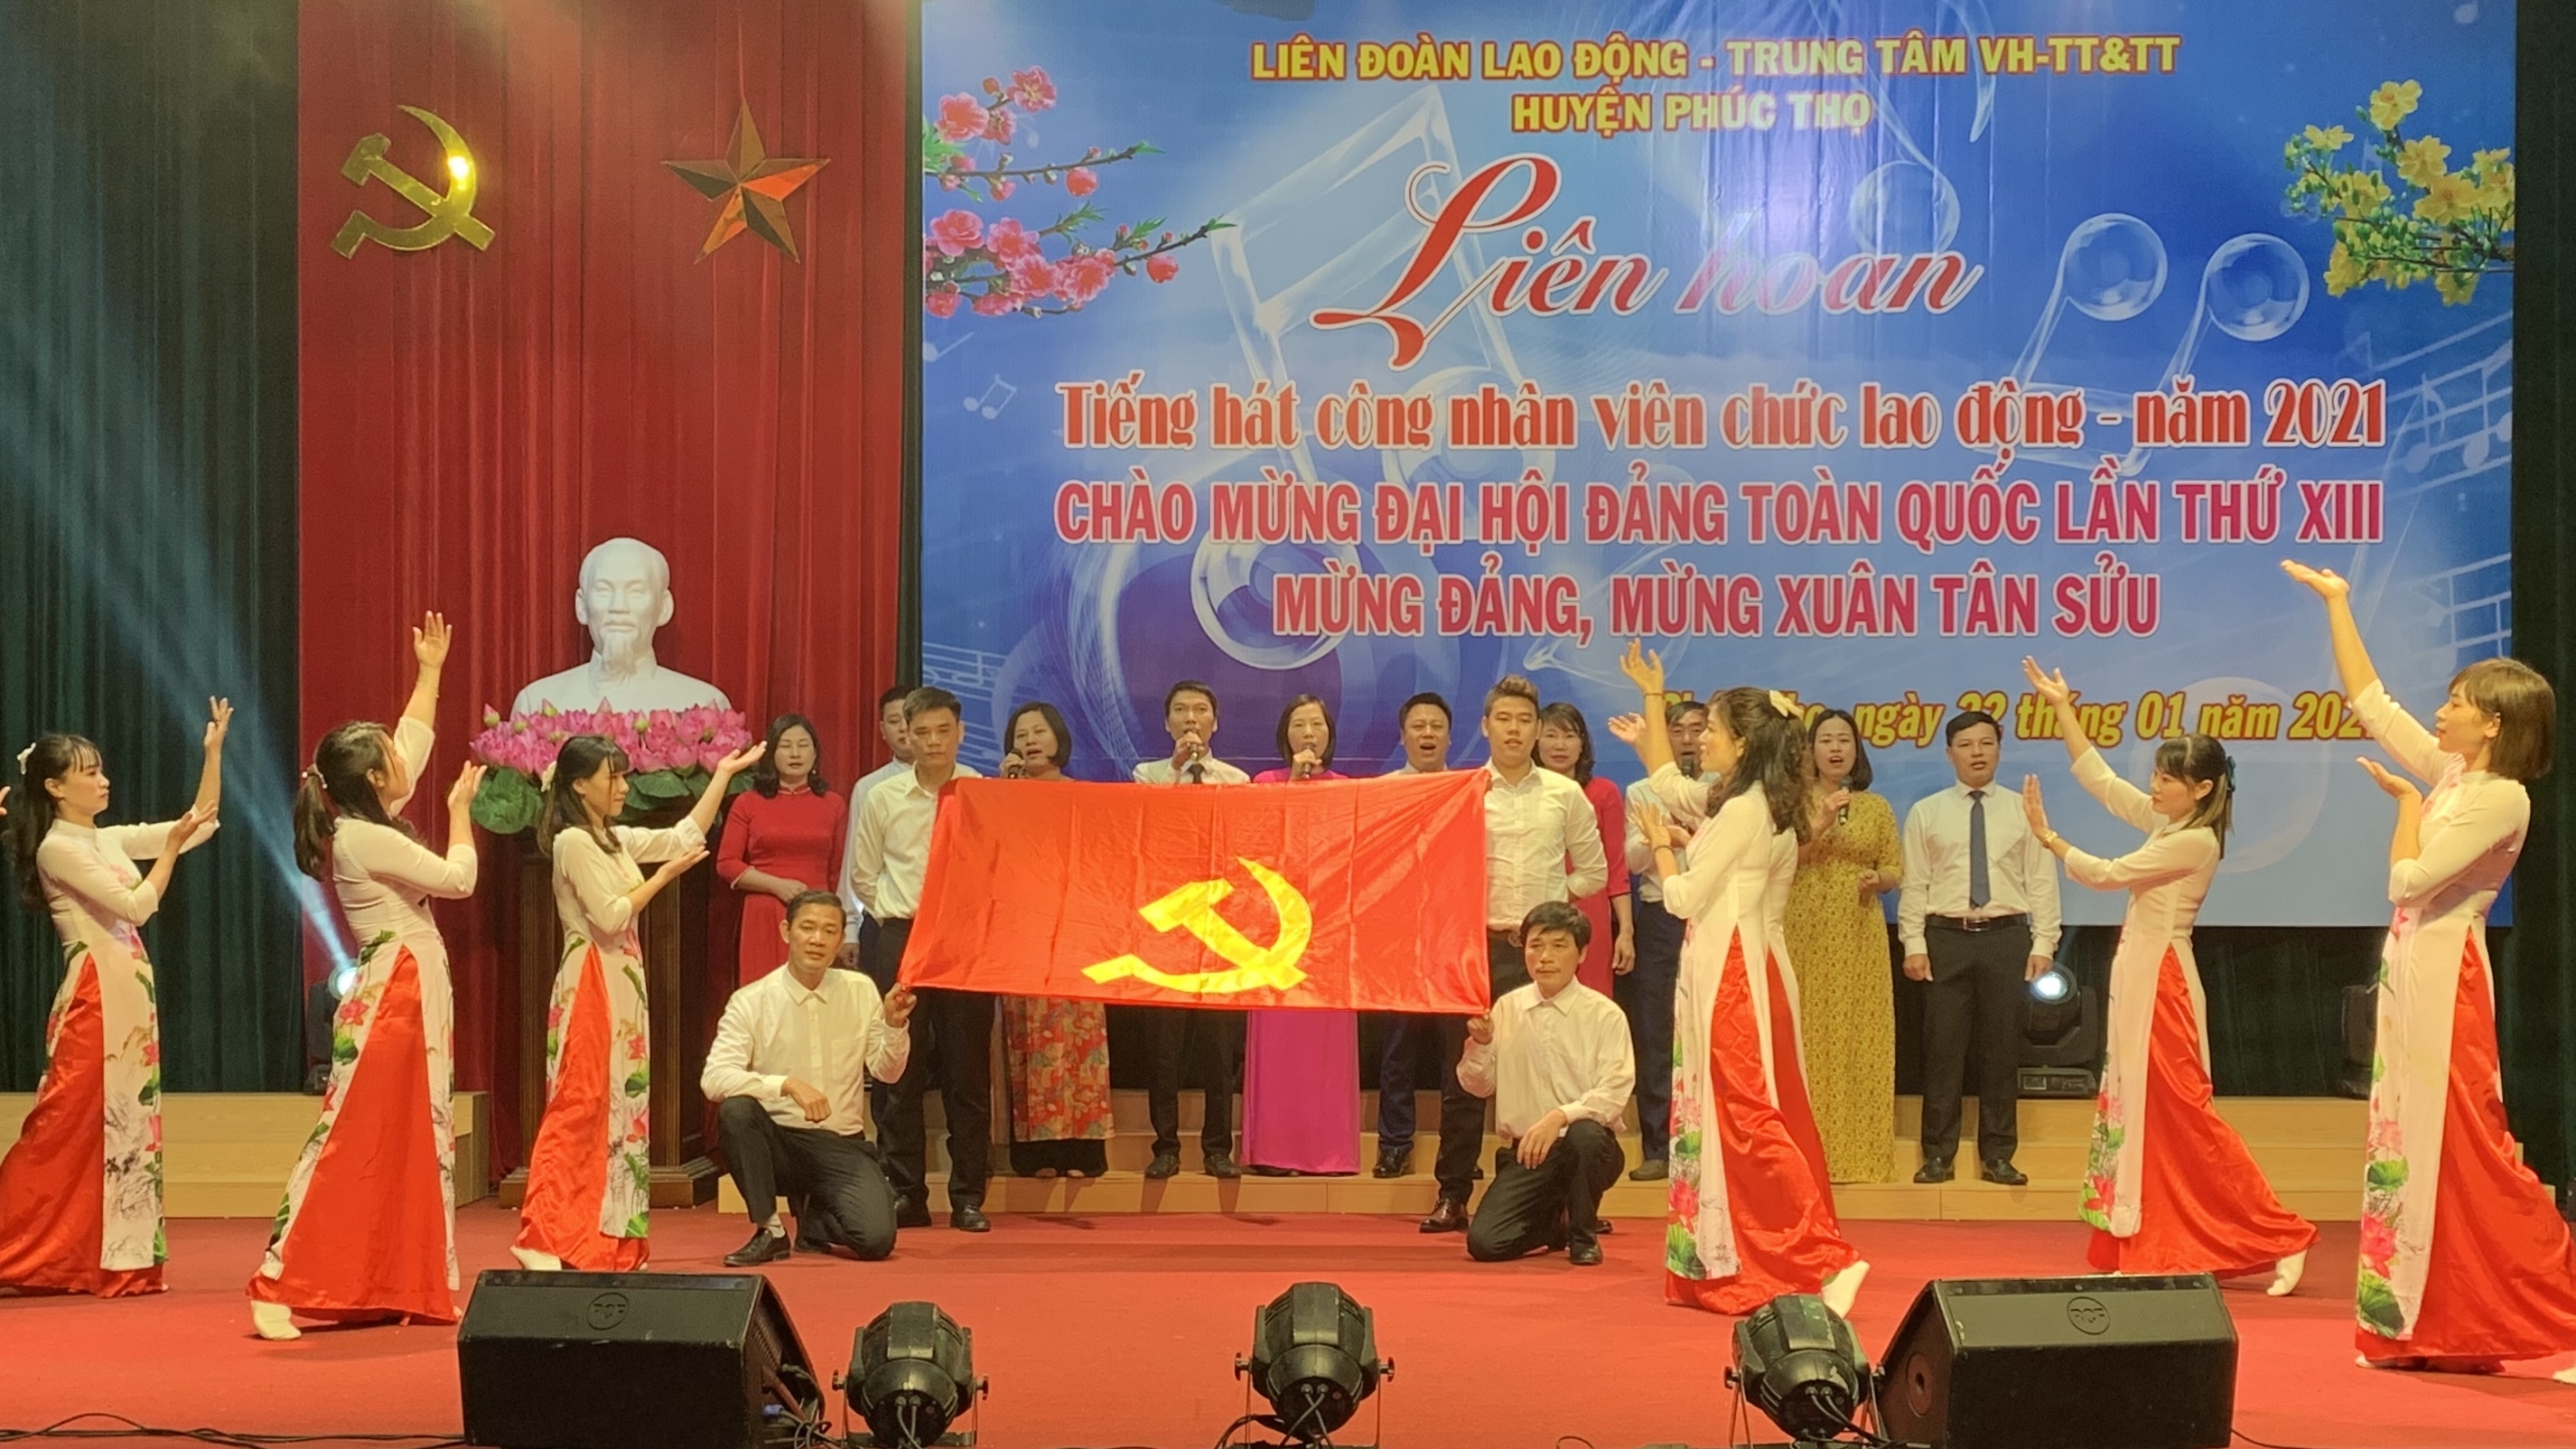 Liên hoan tiếng hát công nhân viên chức lao động huyện Phúc Thọ